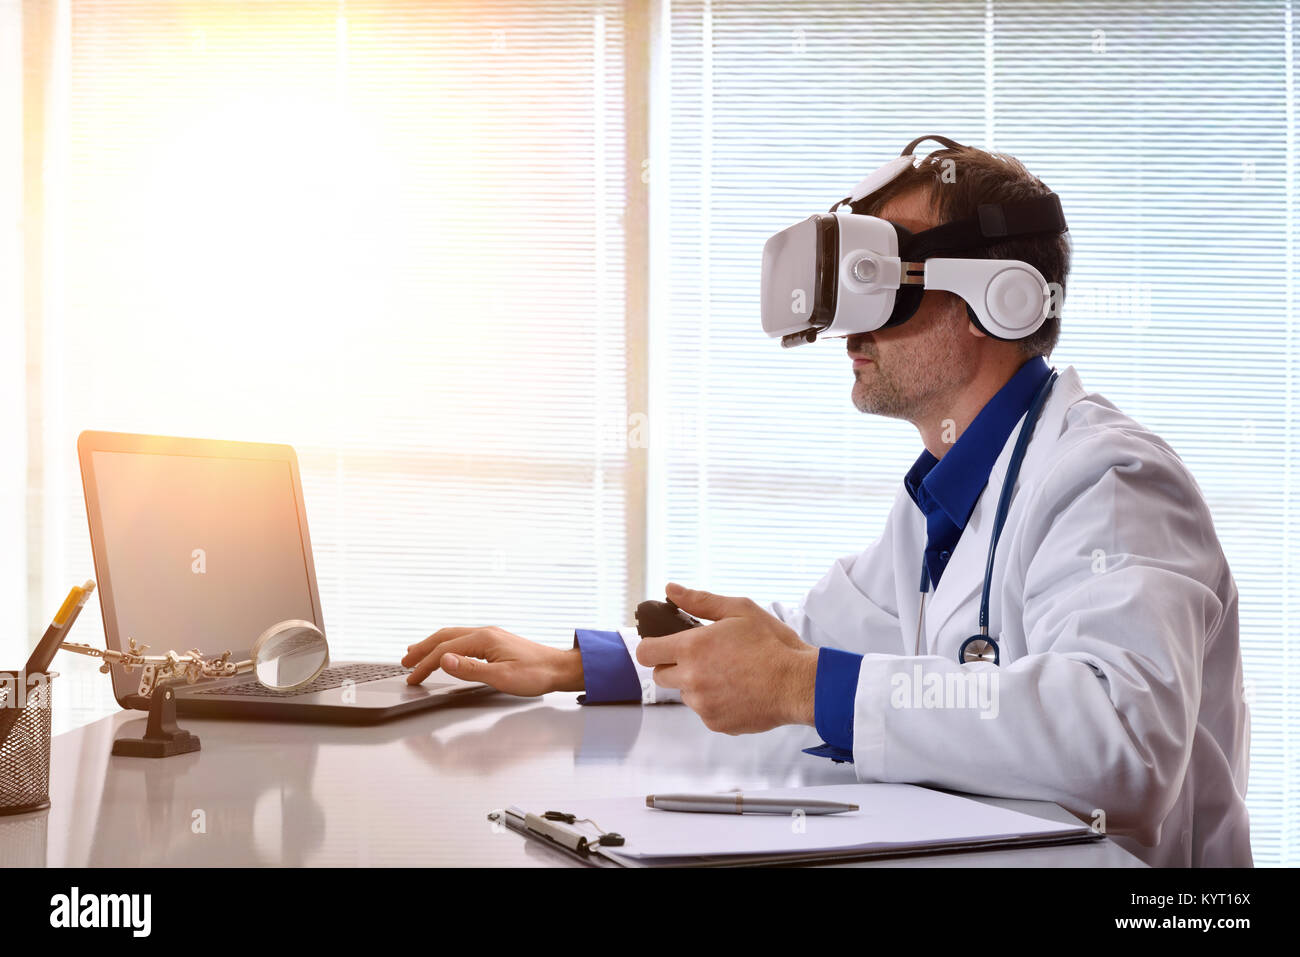 Médecin examinant avec le contenu 3d avec lunettes de réalité virtuelle sur son lieu de travail. Composition horizontale. Banque D'Images